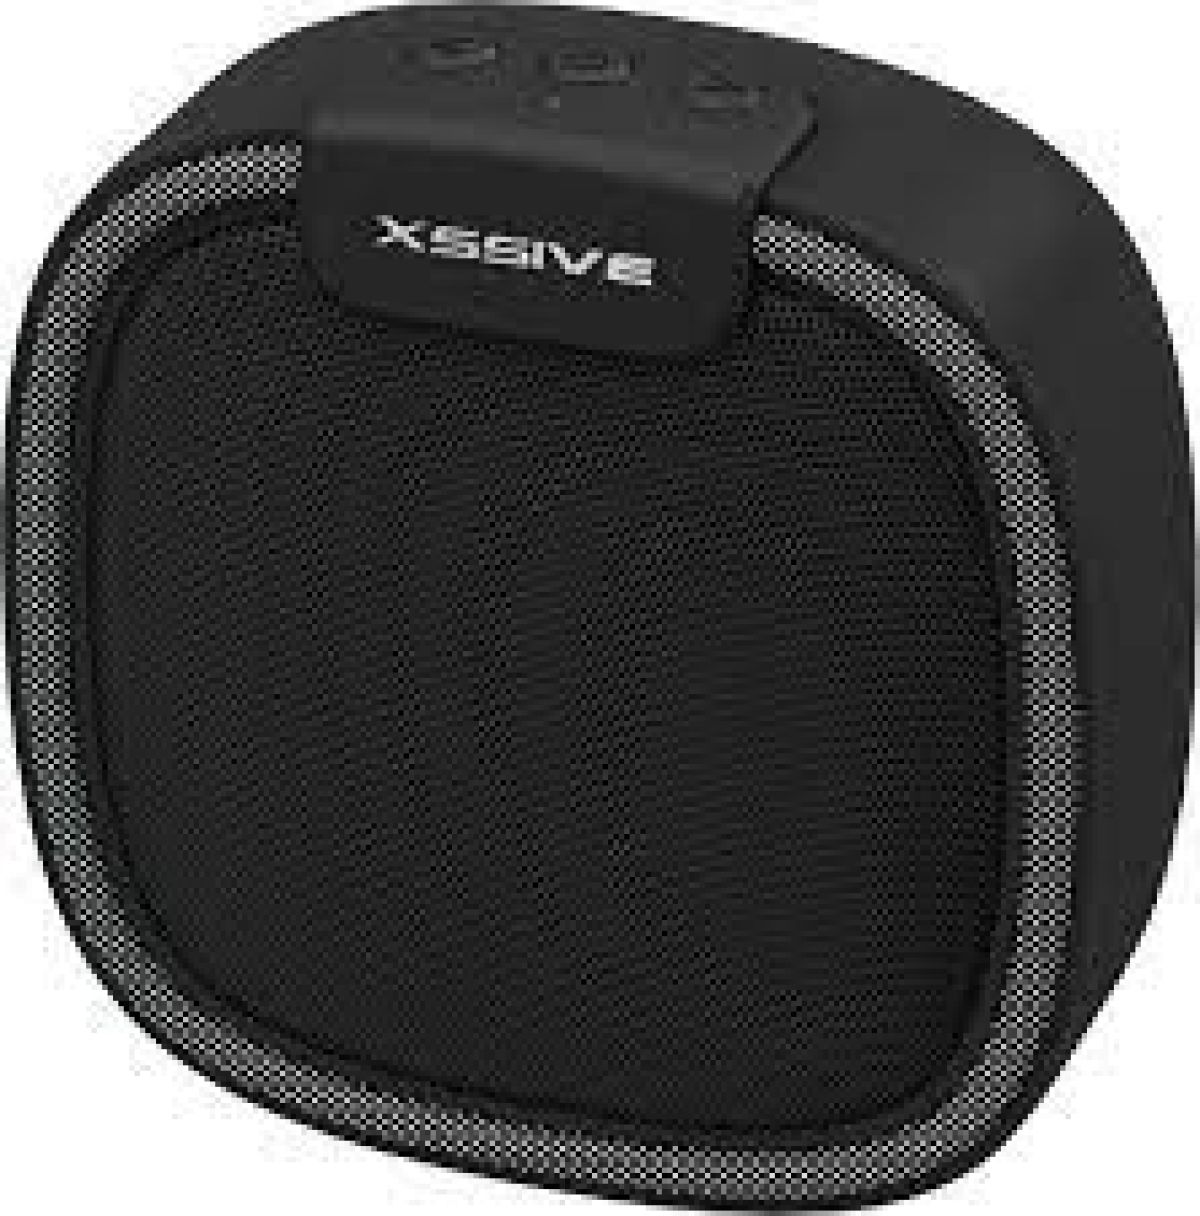 Xssive XSS-BSP12B Bluetooth